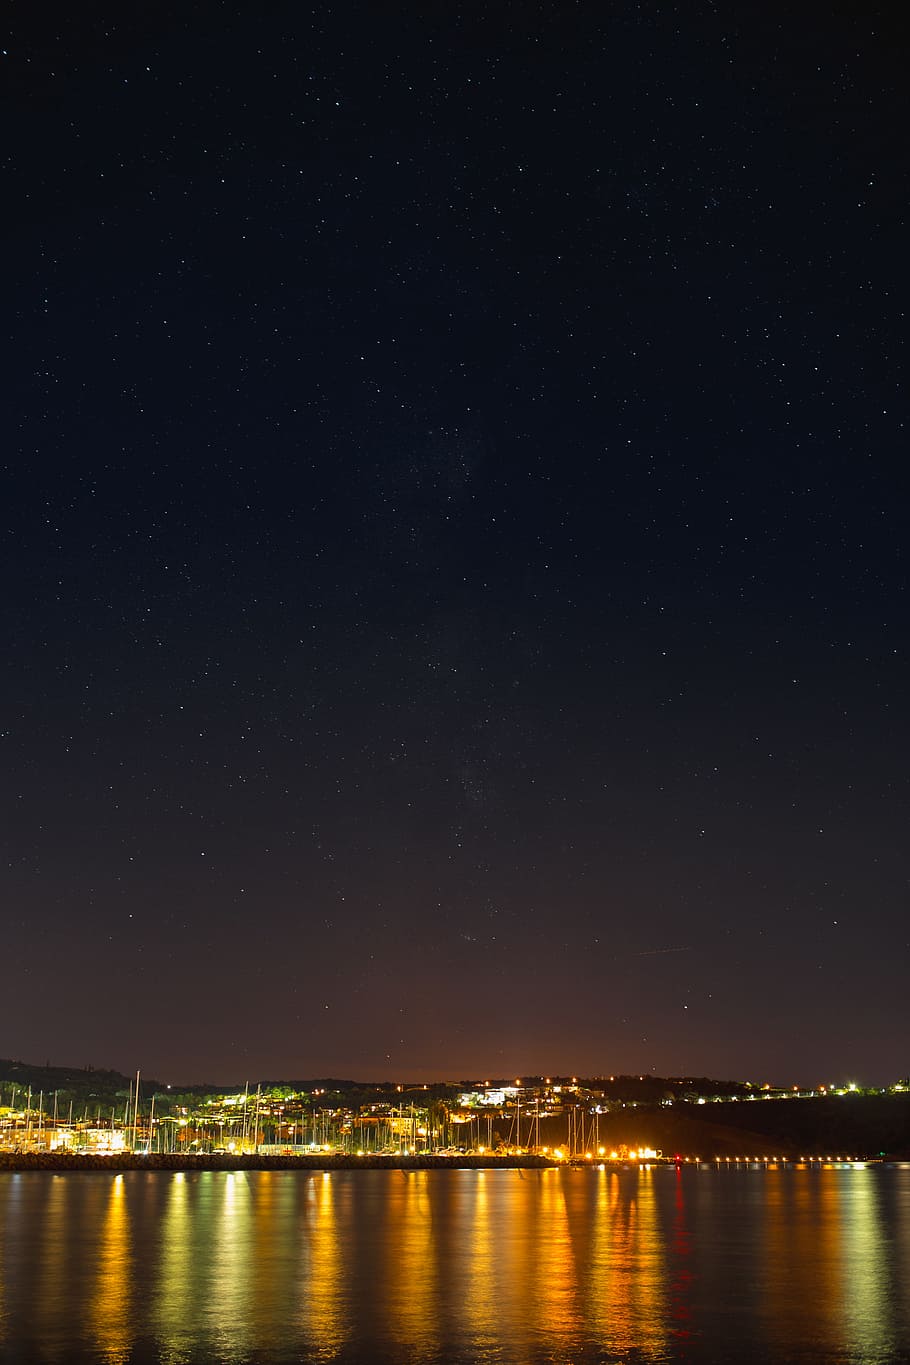 Starry sky at night over the marina, Izola, Slovenia, night sky, HD wallpaper